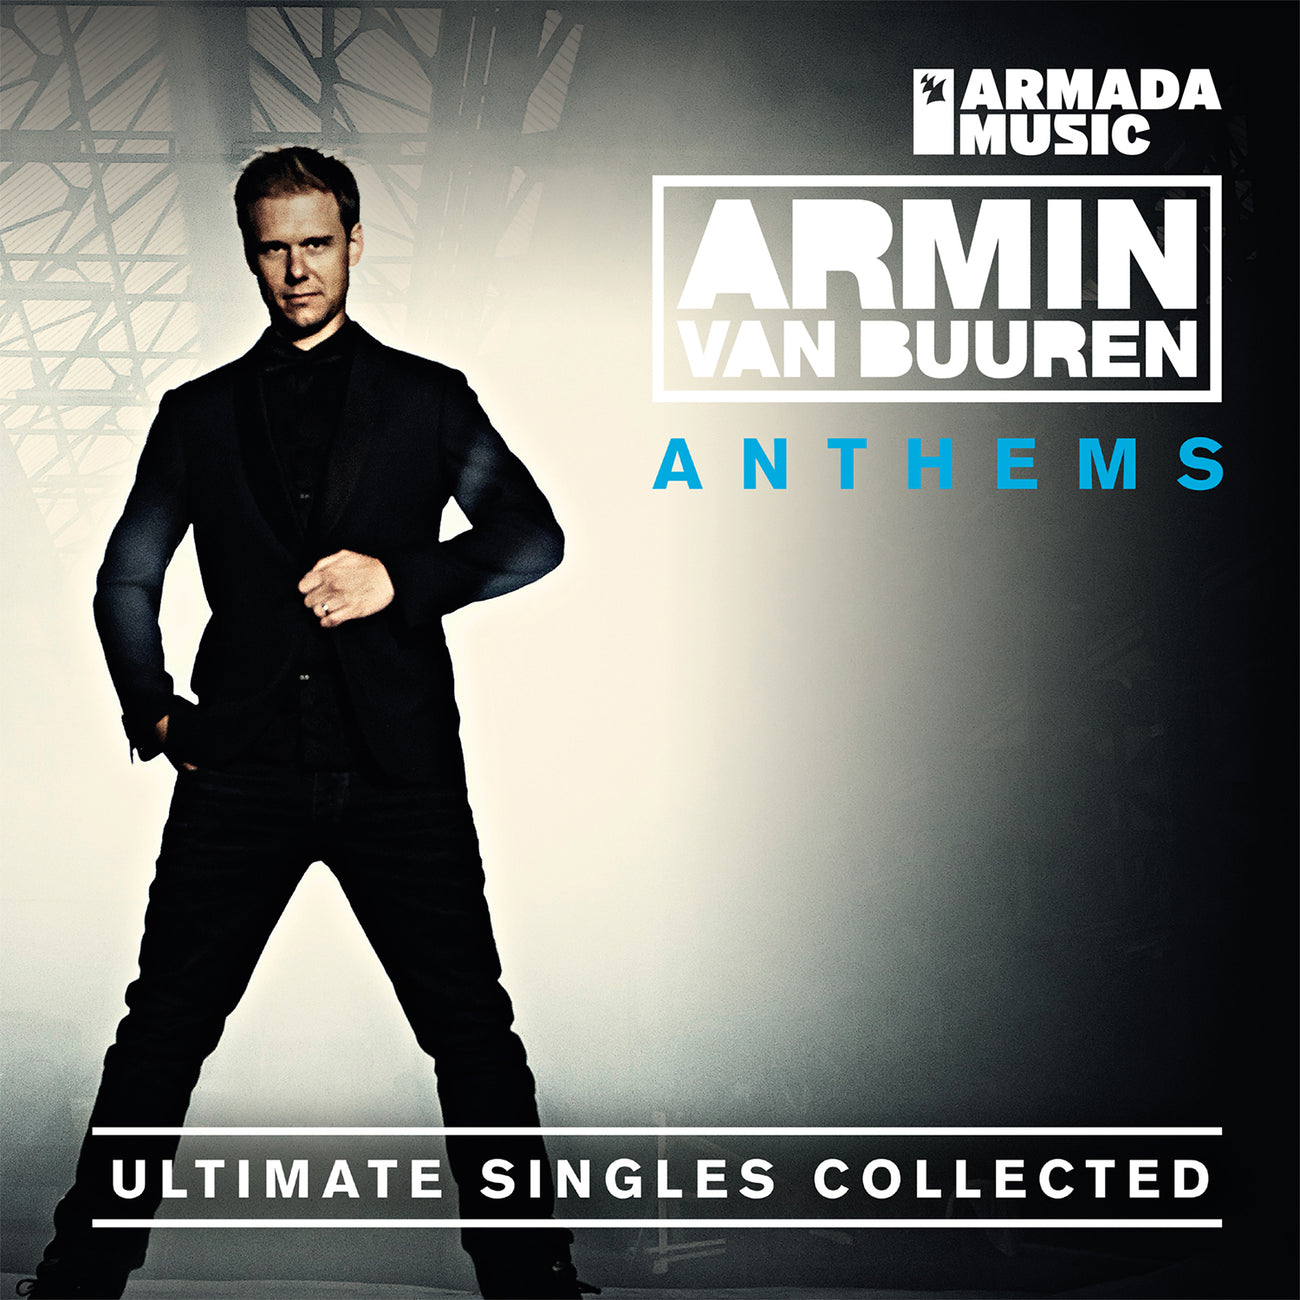 Armin van Buuren Anthems (Ultimate Singles Collected) (Vinyl)